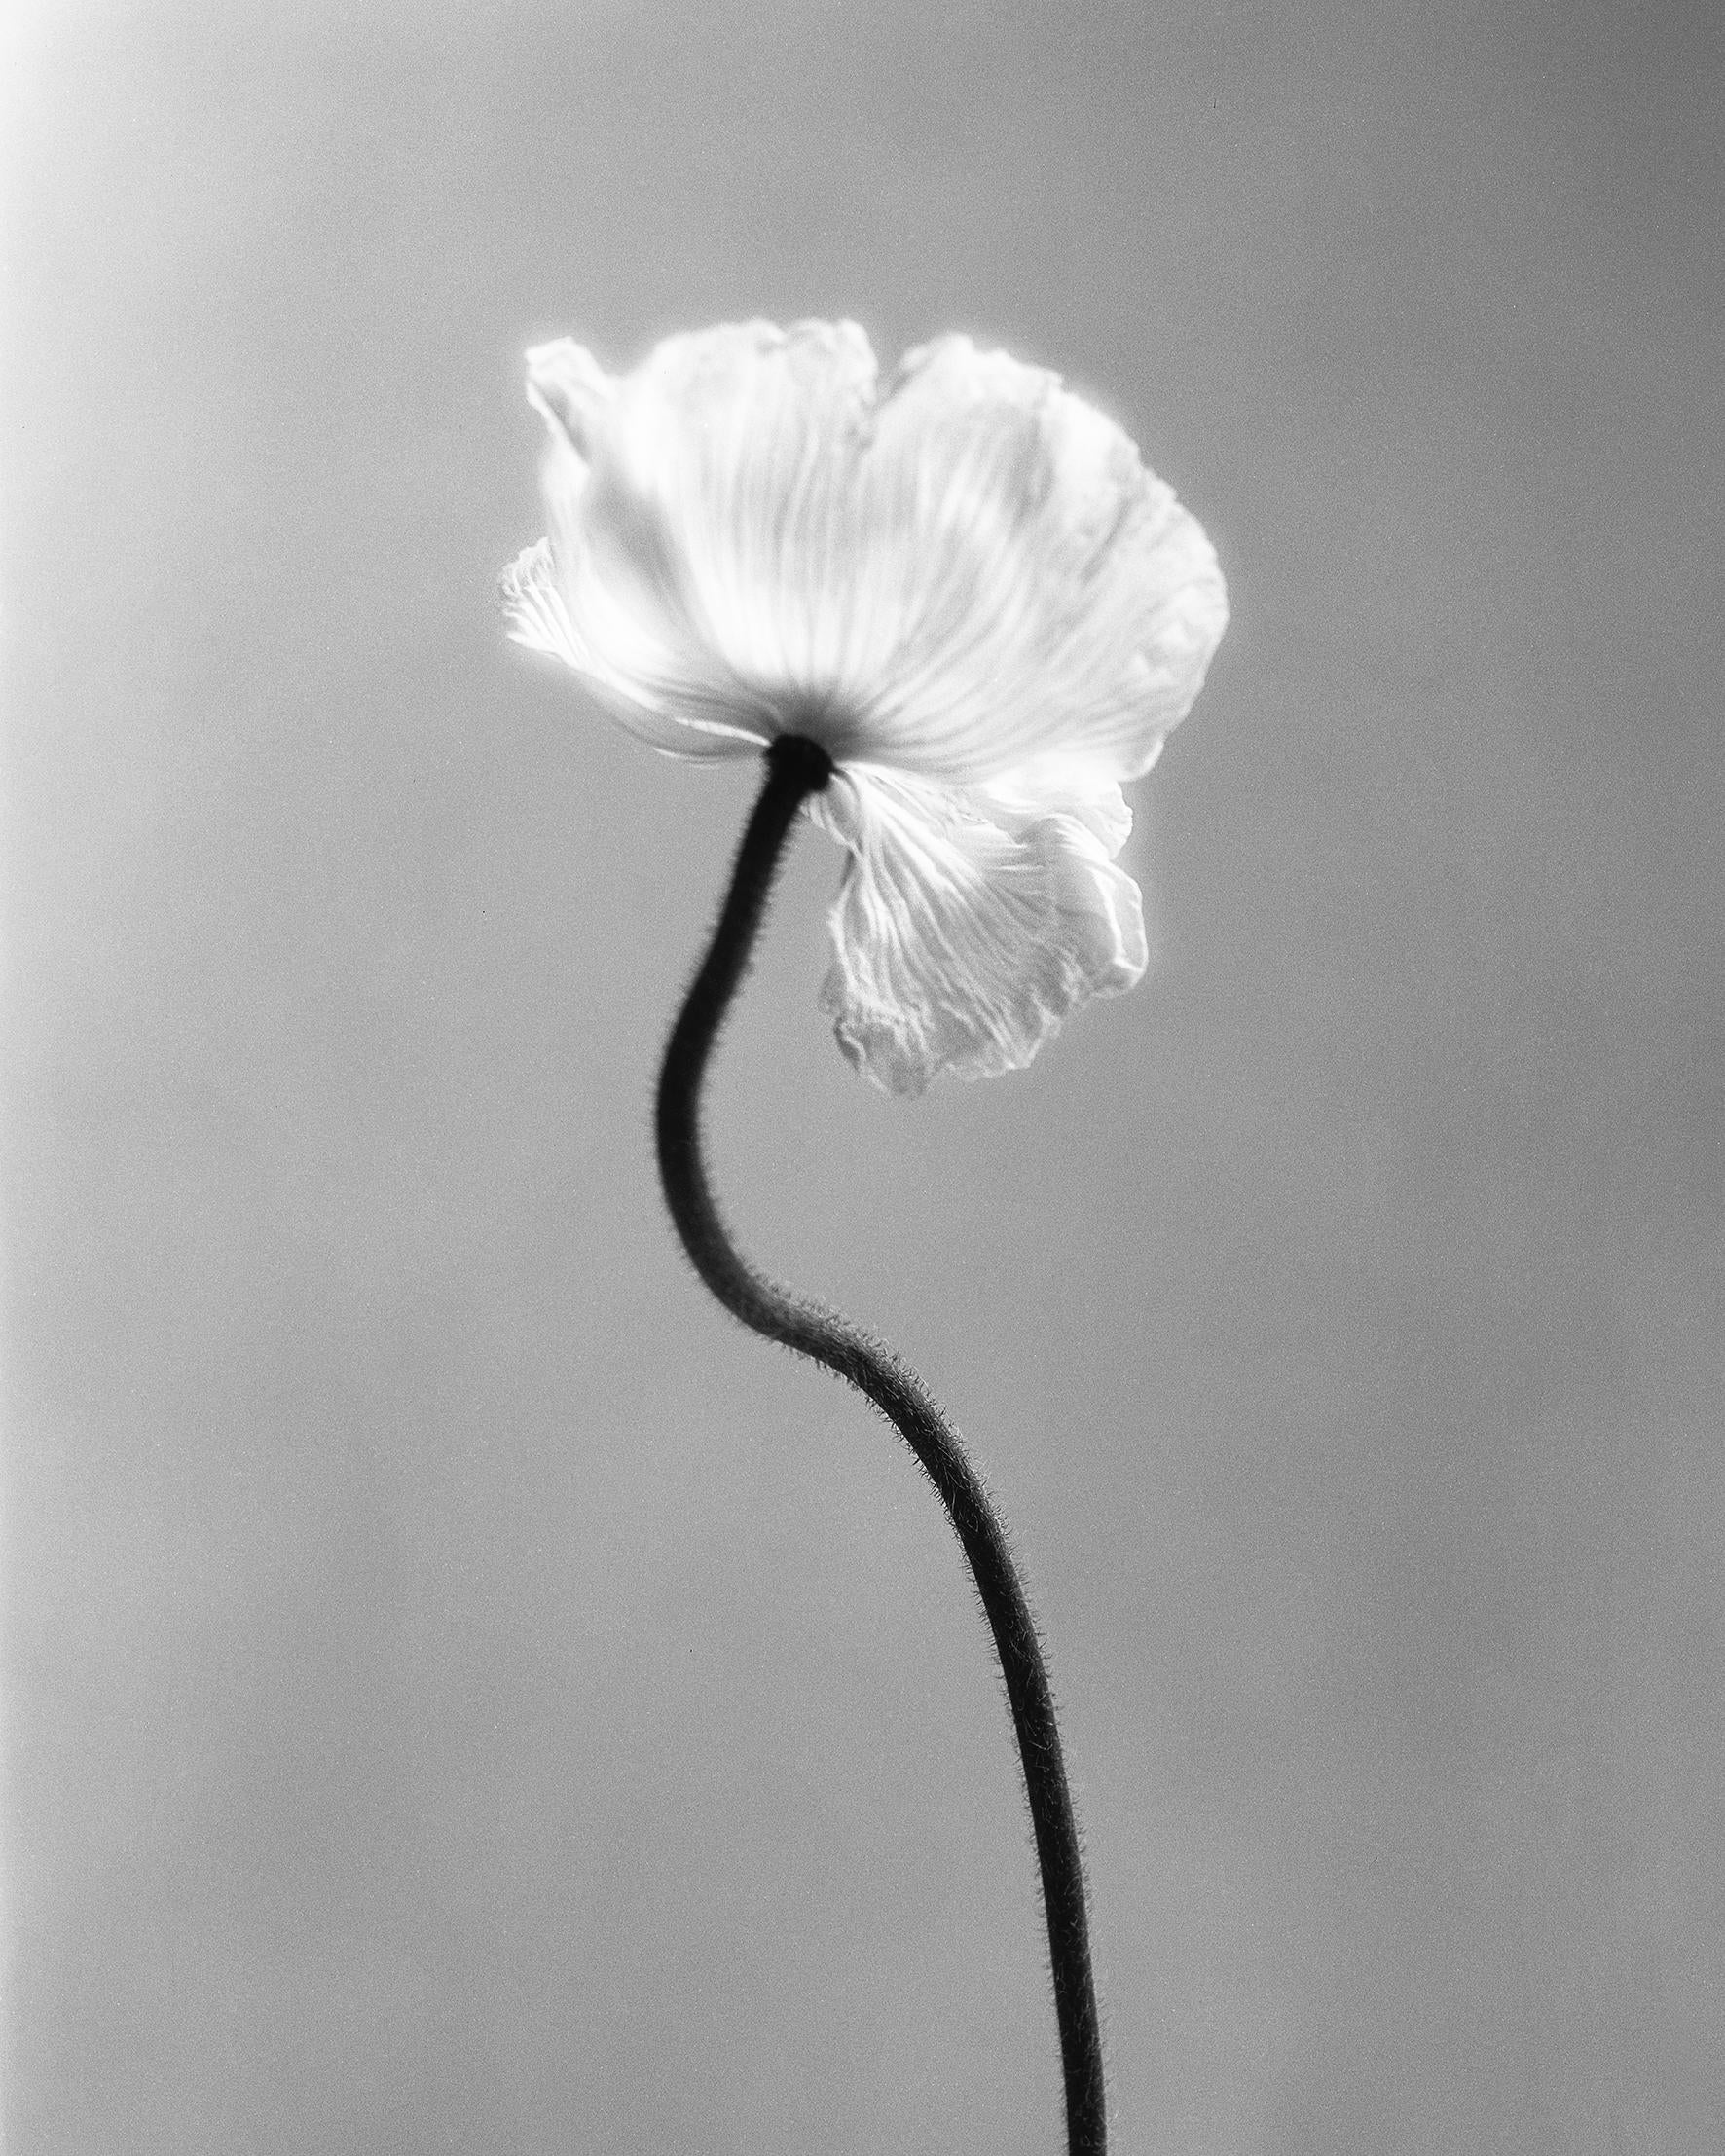 Poppy No.3 - Photographie florale analogique en noir et blanc, édition limitée à 15 exemplaires.